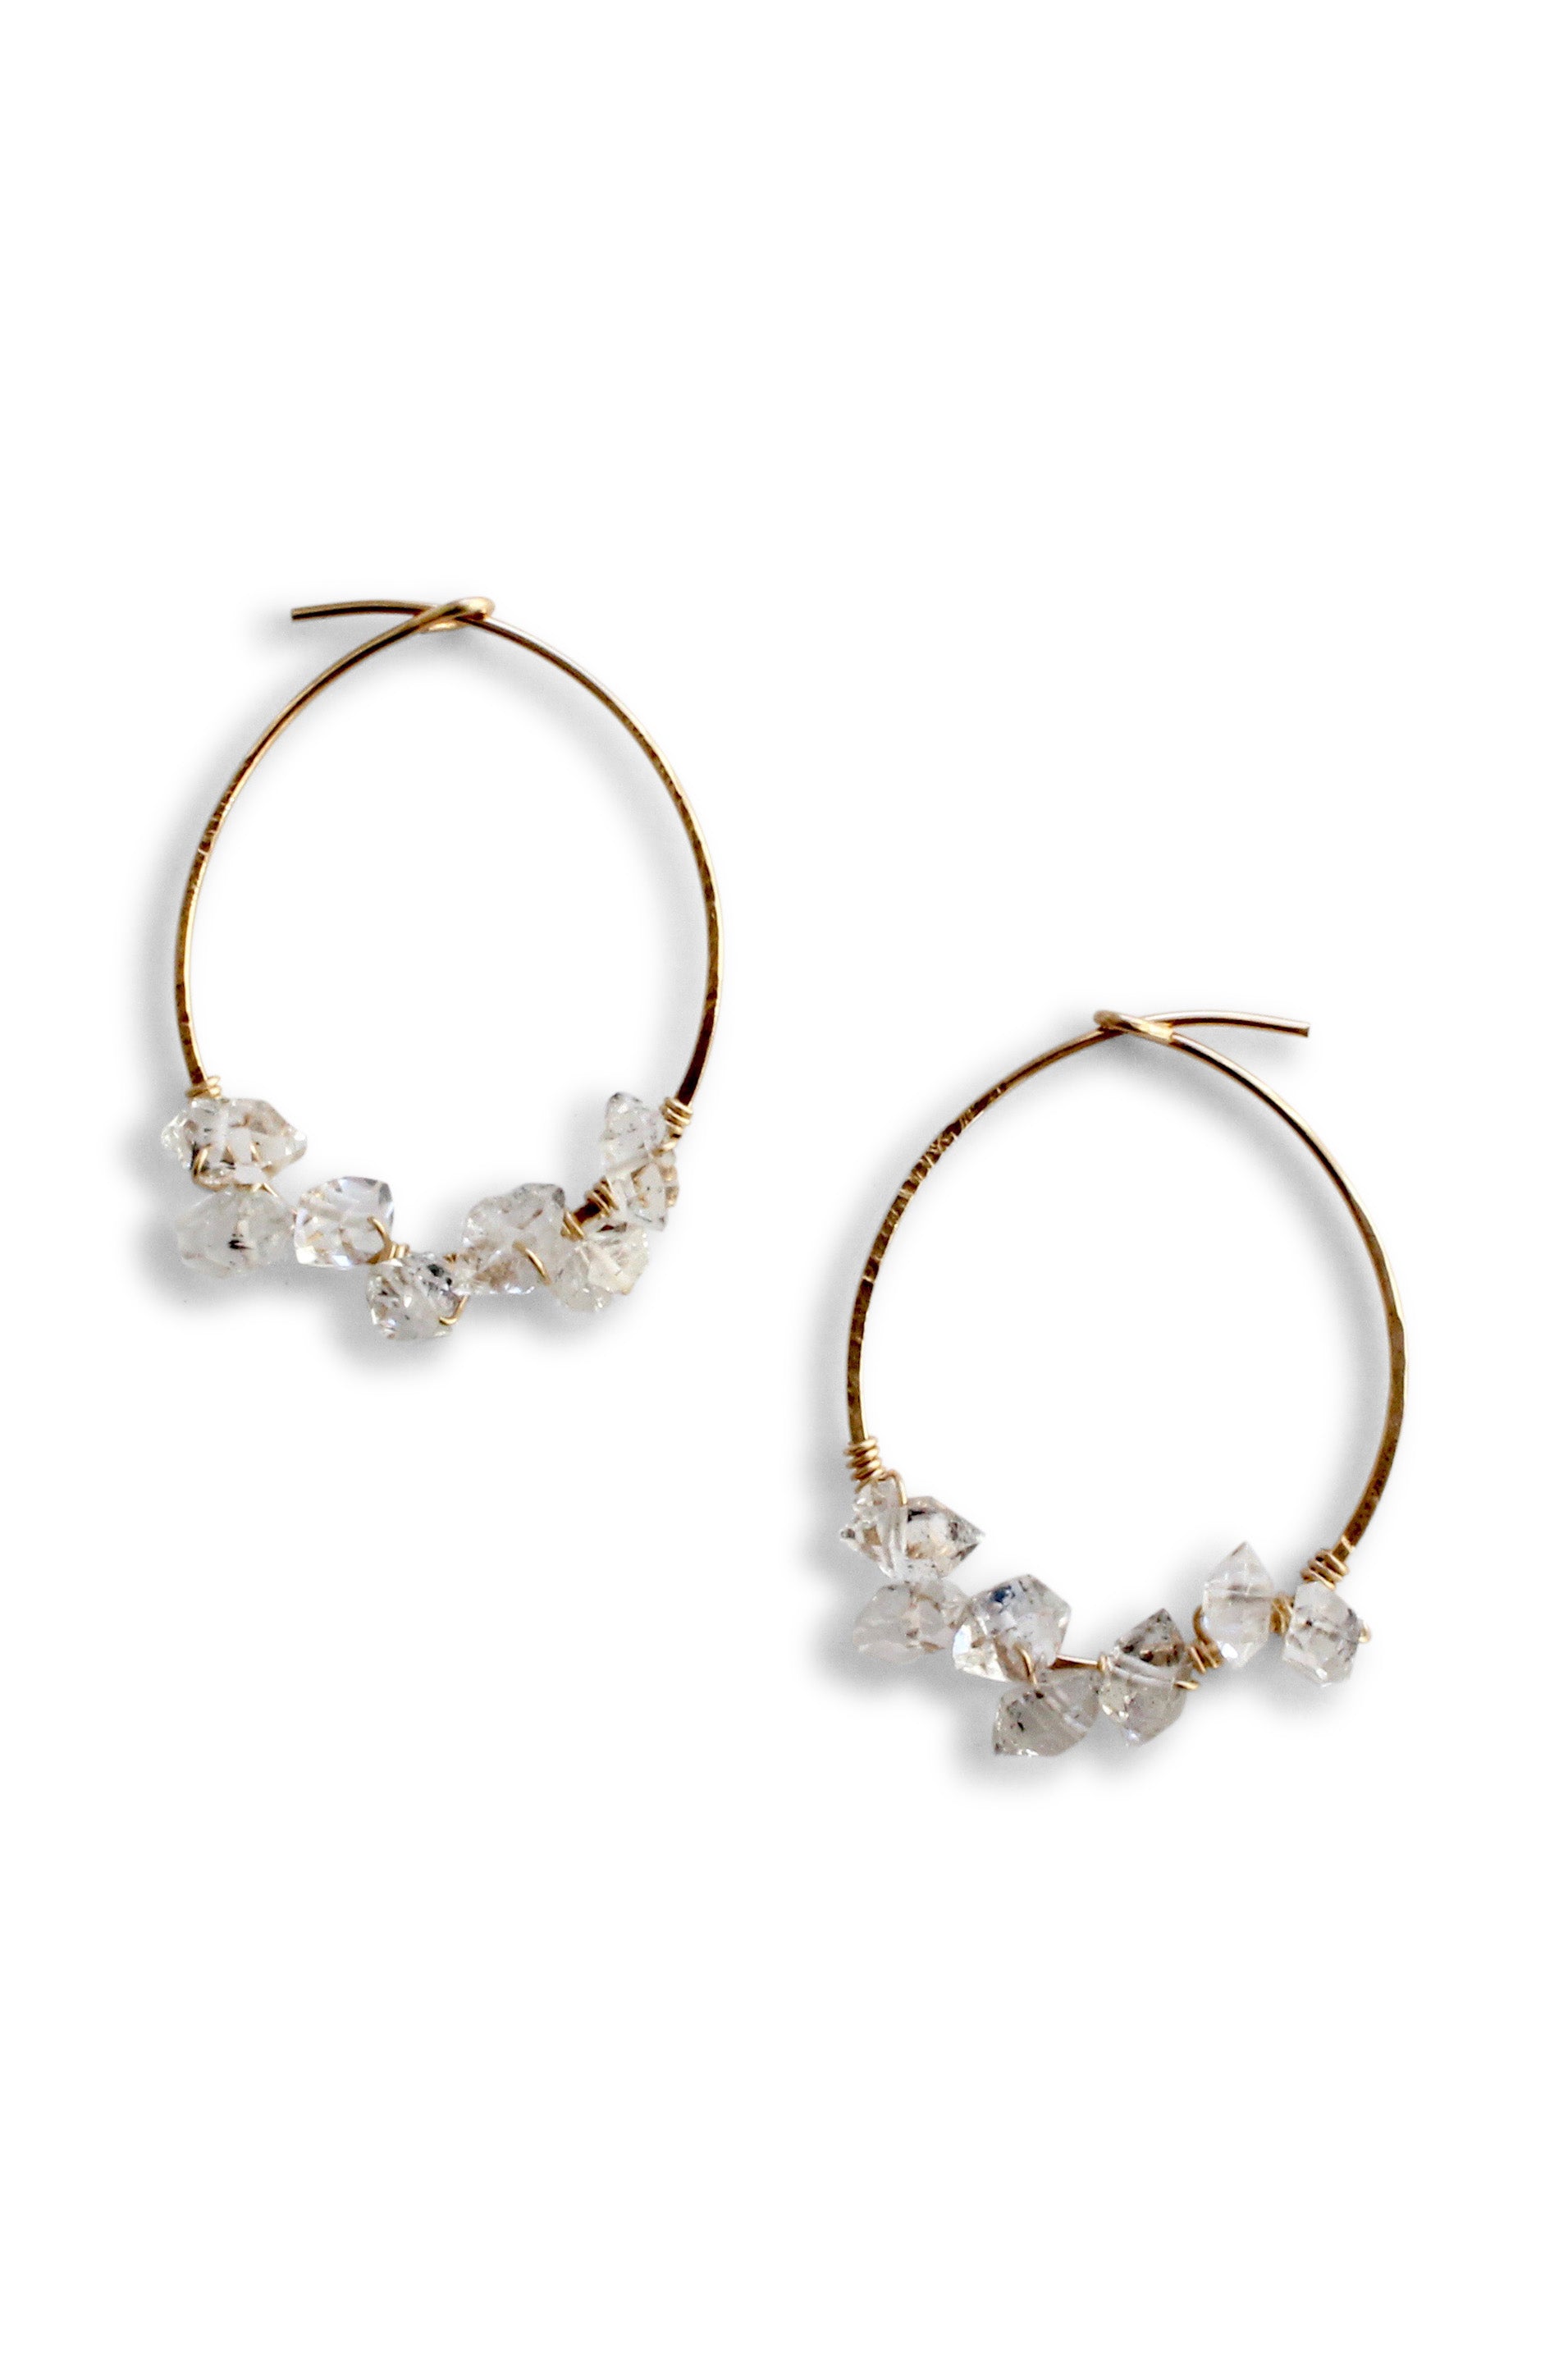 Herkimer Diamond Hoop Earrings Large